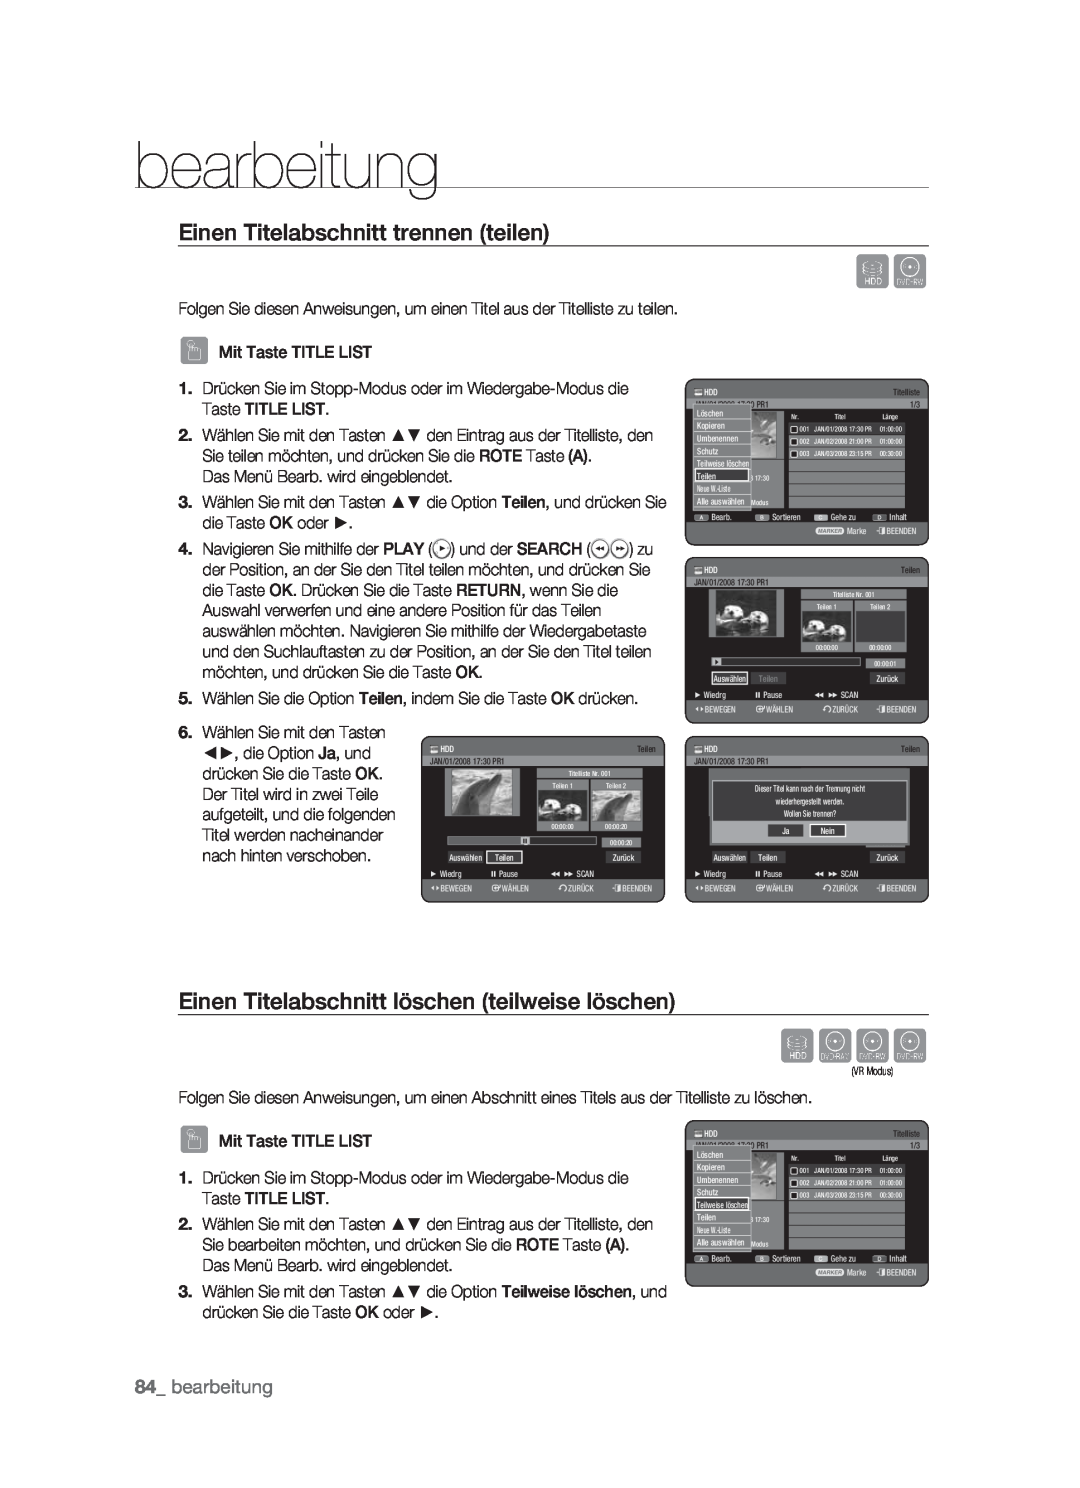 Samsung DVD-HR773/XEN manual Sxck, Einen Titelabschnitt trennen teilen, Einen Titelabschnitt löschen teilweise löschen 